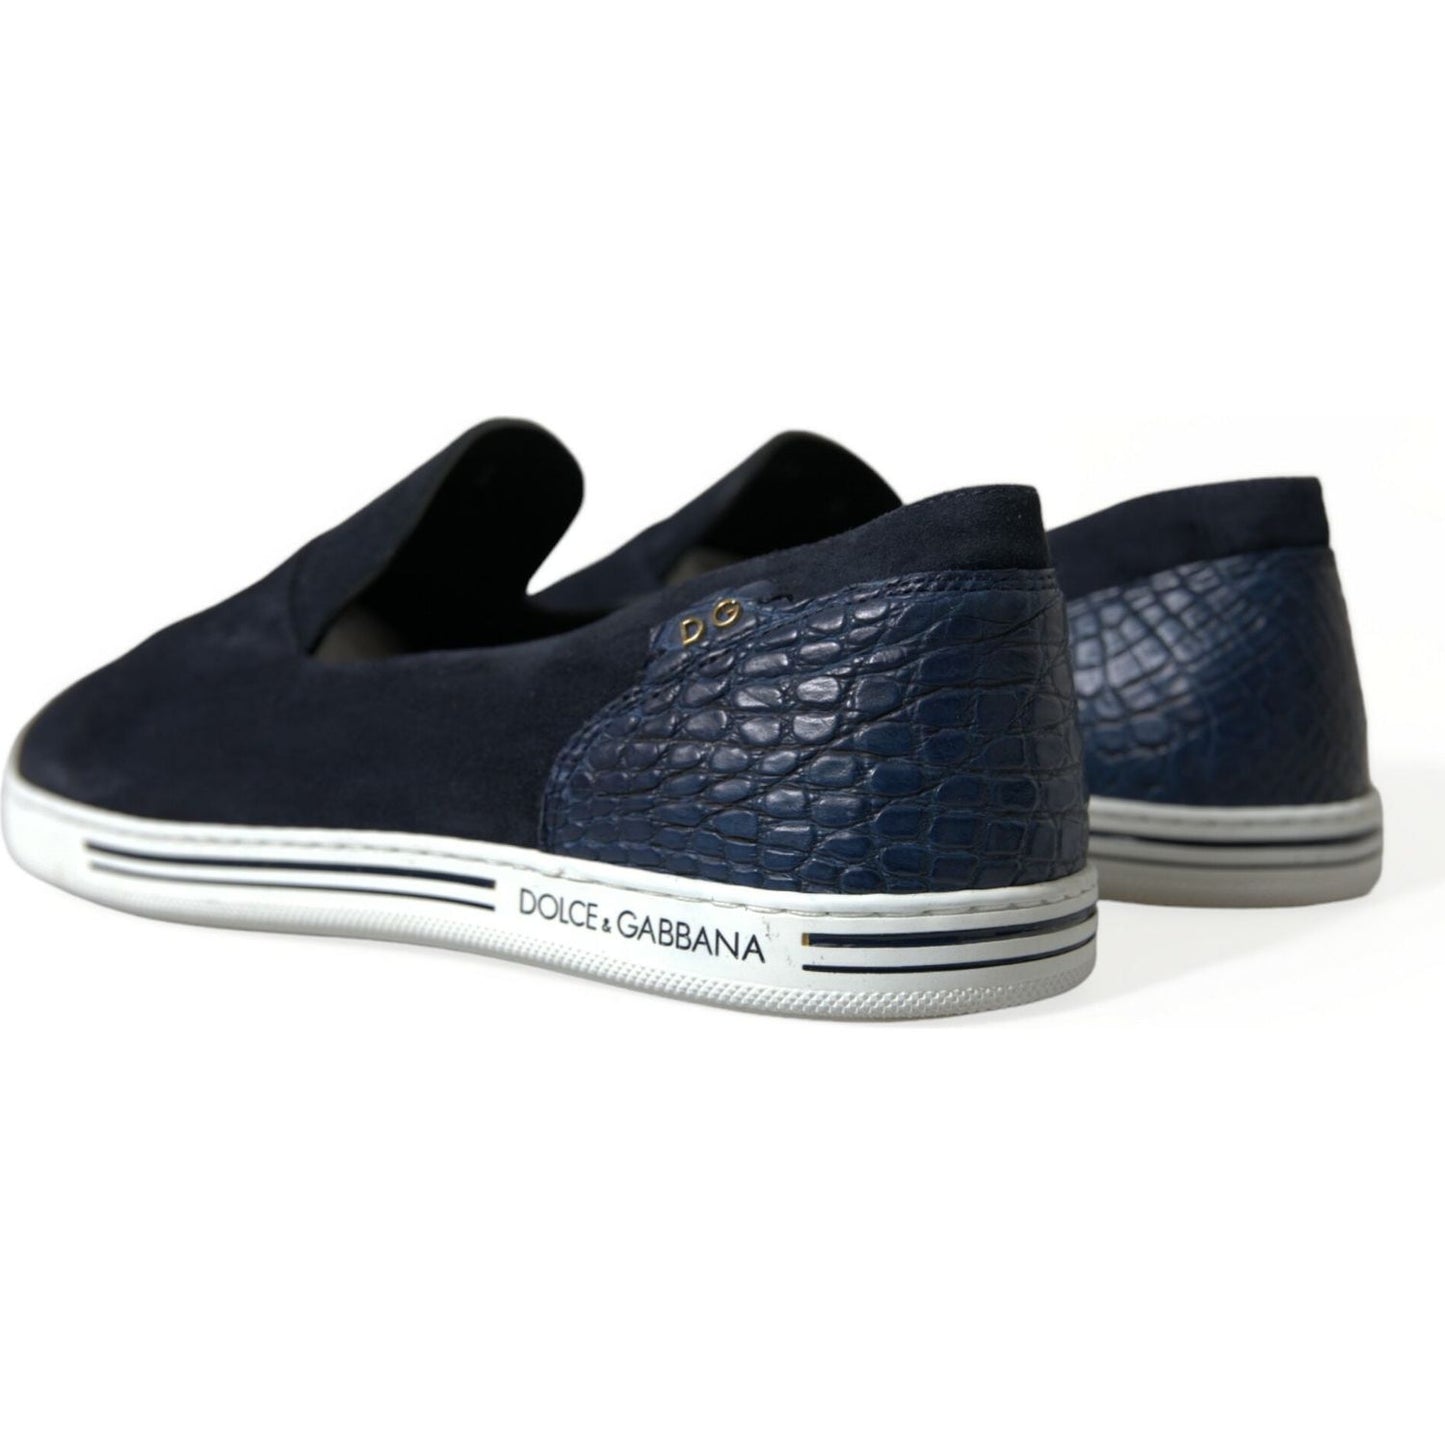 Dolce & Gabbana | Elegant Blue Suede Leather Loafers| McRichard Designer Brands   